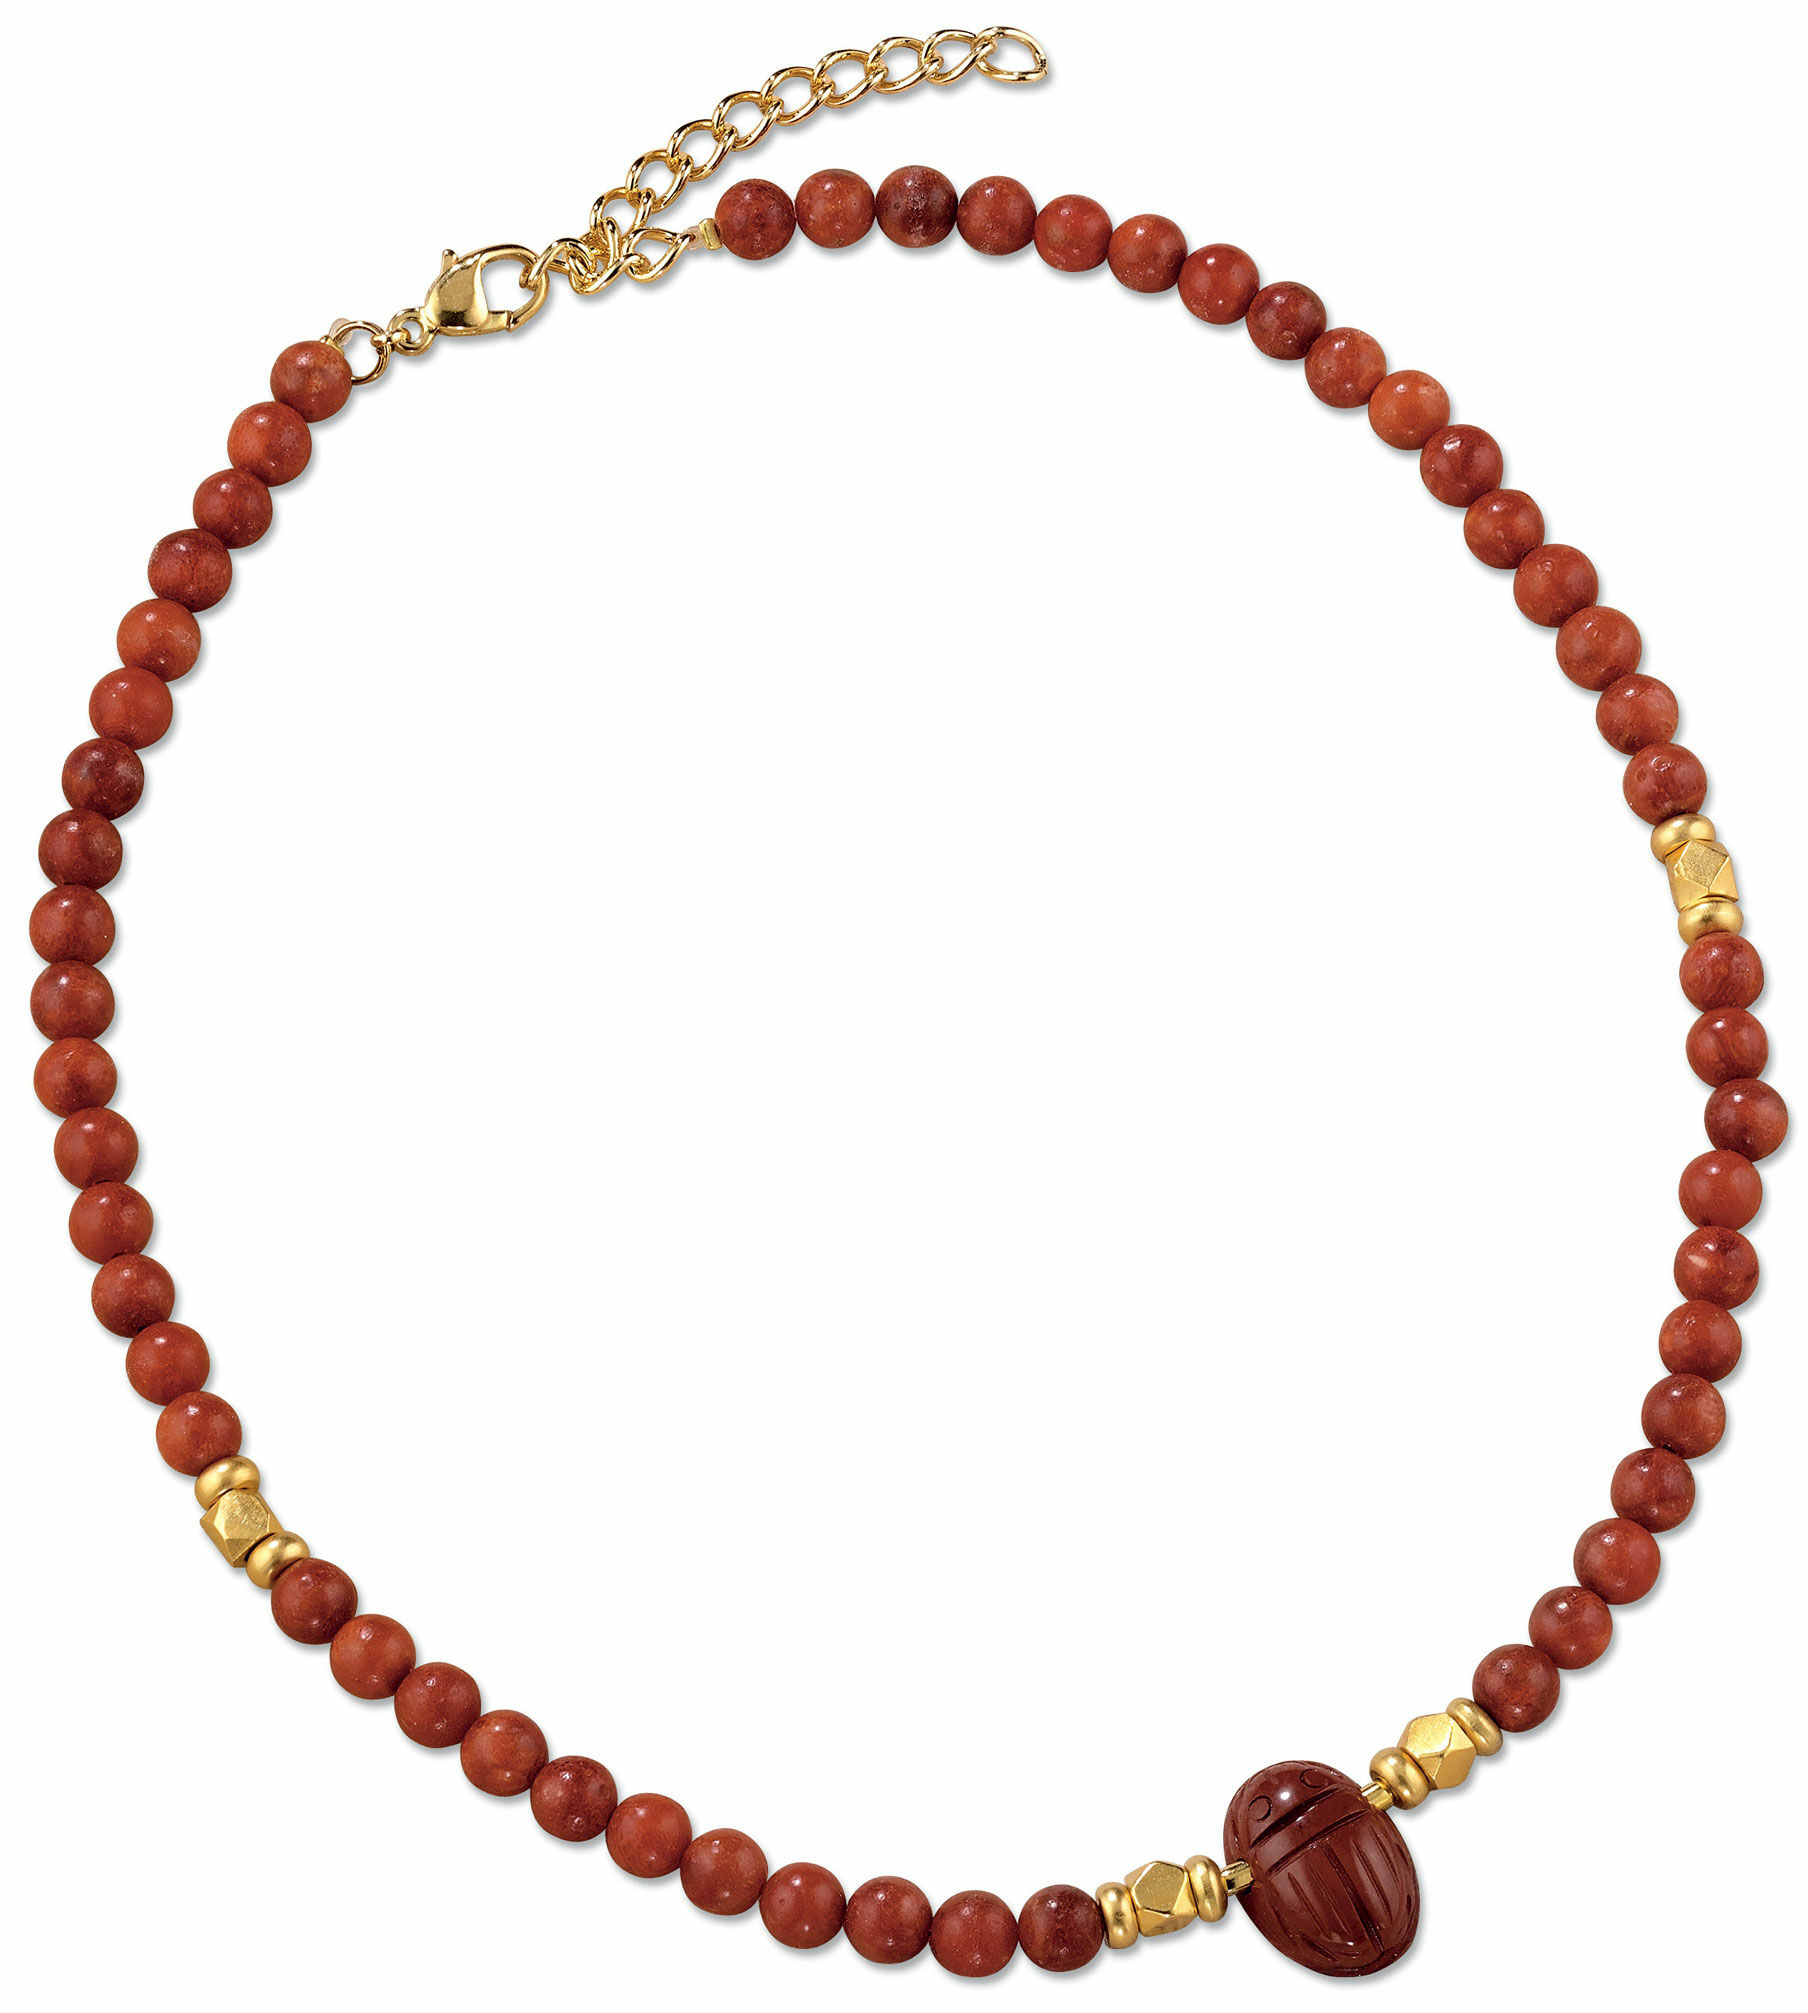 Skarabäus-Collier aus Jaspis und Zuchtkorallen-Perlen von Petra Waszak